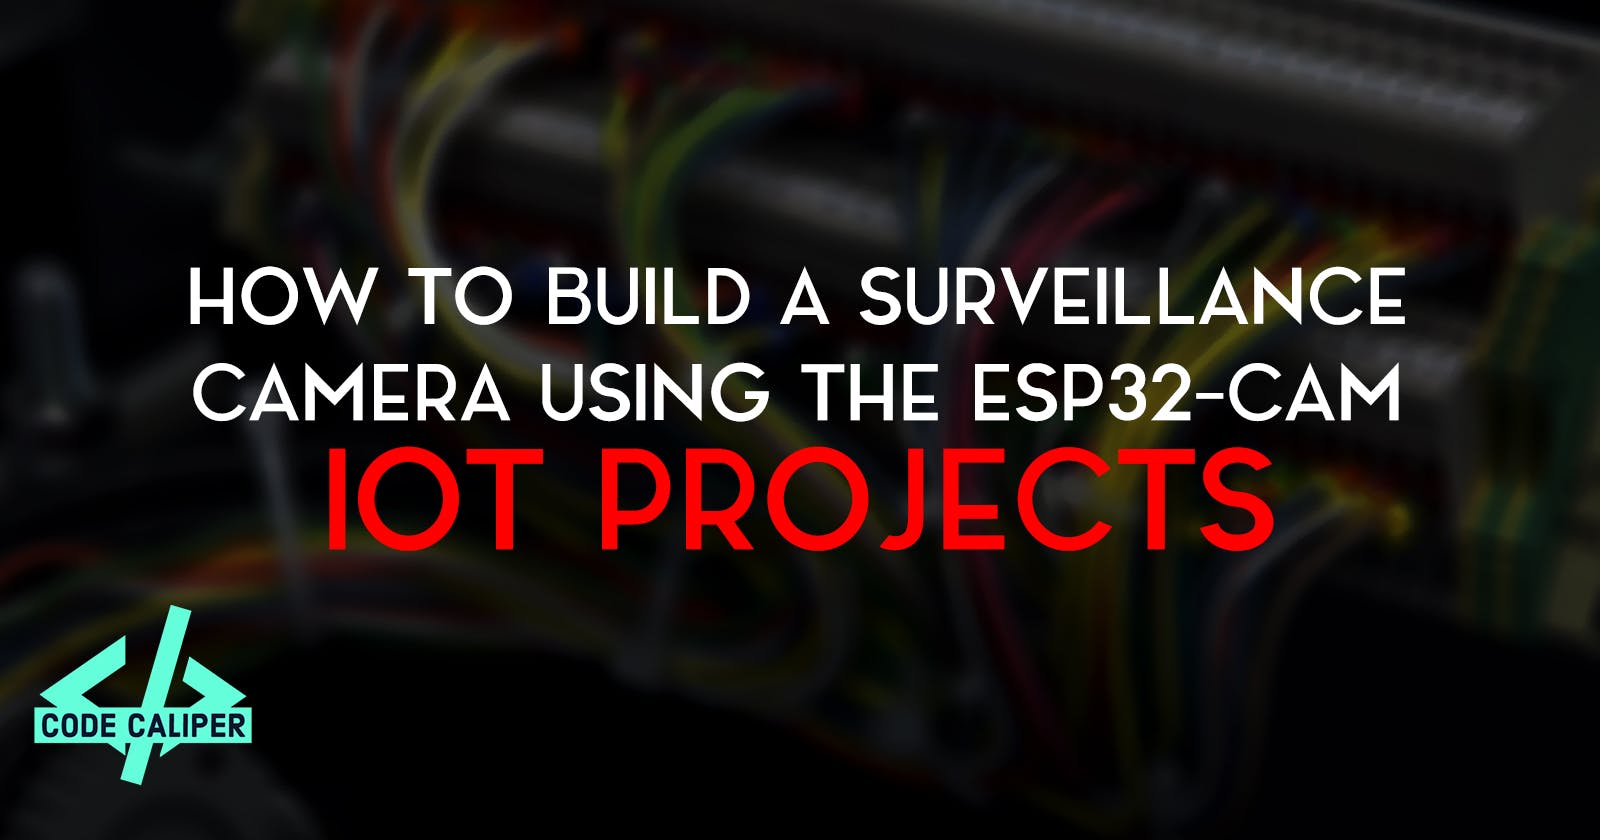 How to Build a Surveillance Camera Using the ESP32-CAM